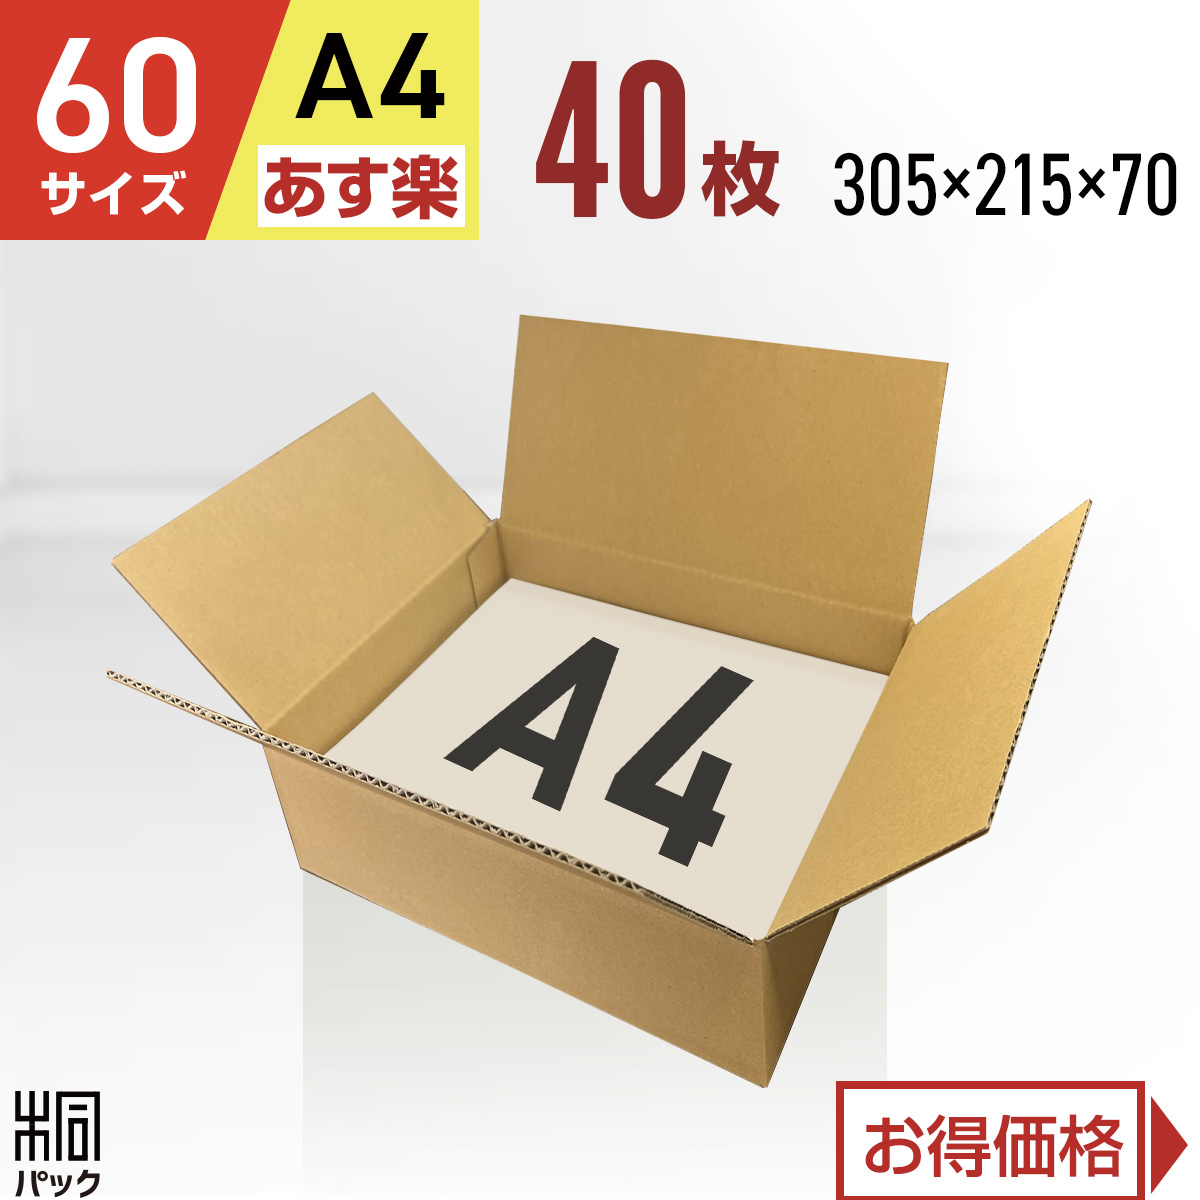 【楽天市場】段ボール 箱 60サイズ A4 30枚 (3mm厚 305x215x70